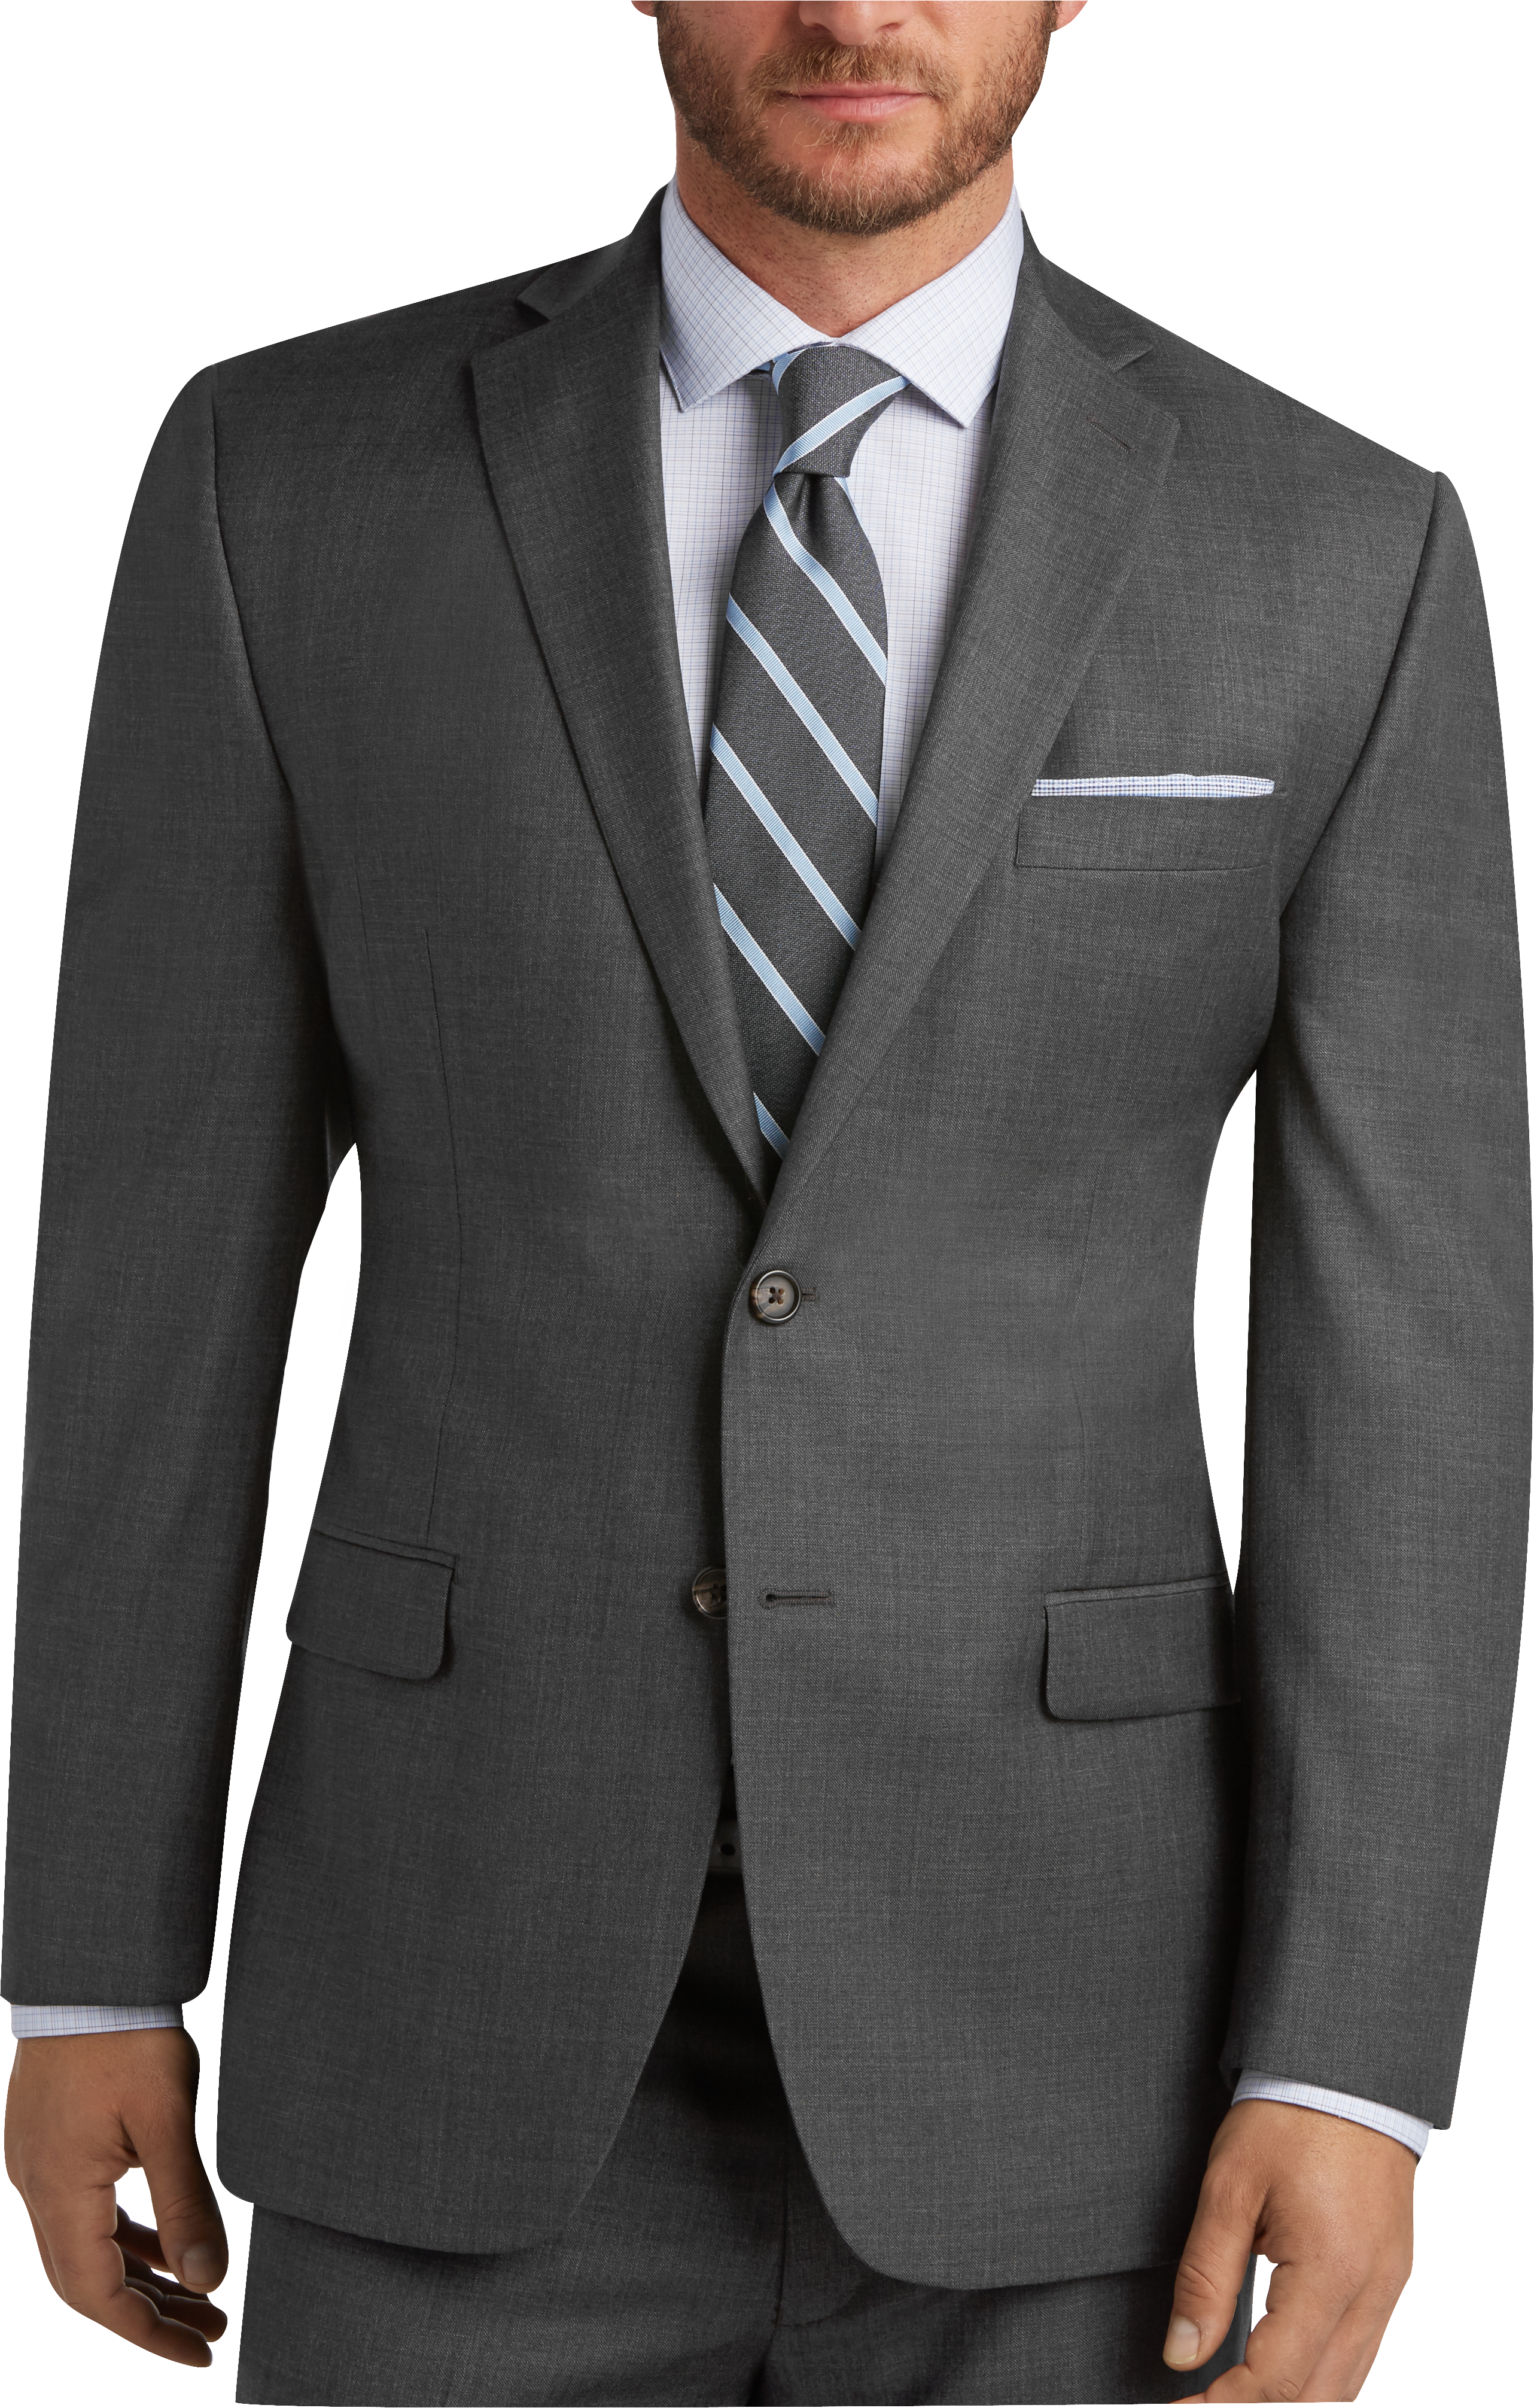 Gray Sharkskin Suit - Men's Suits 